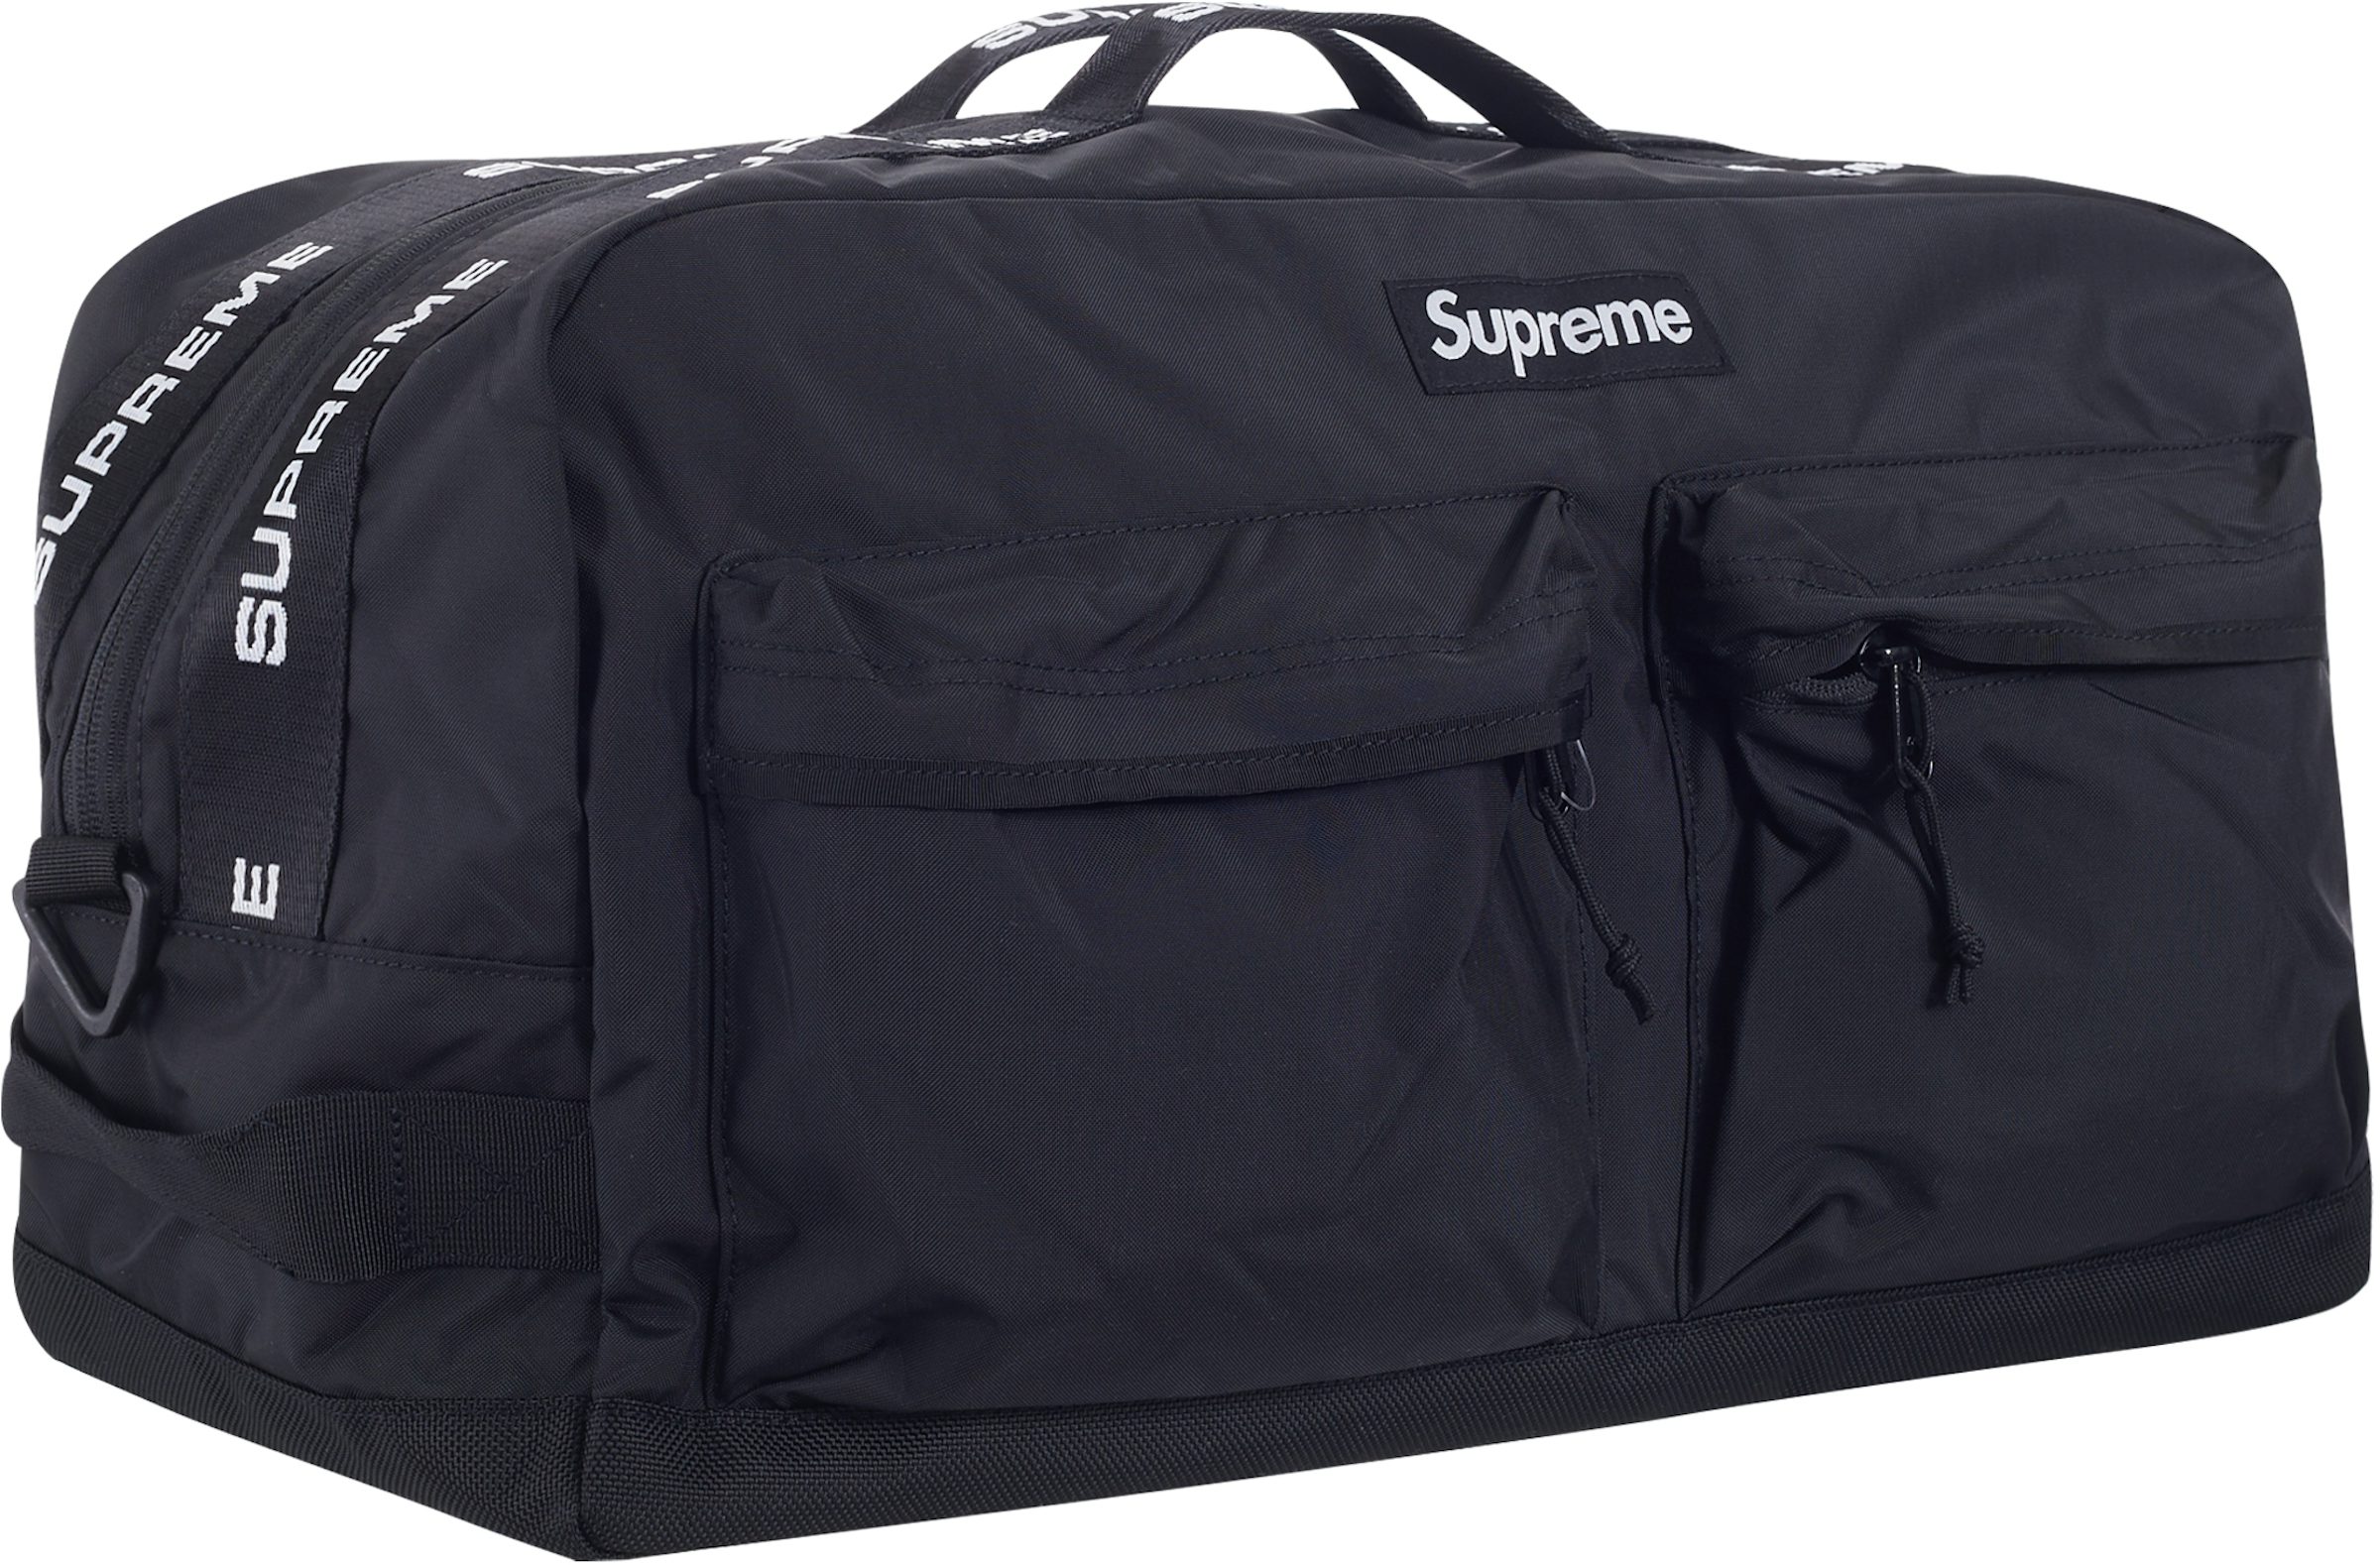 NEW Supreme 22FW Shoulder Bag Silver